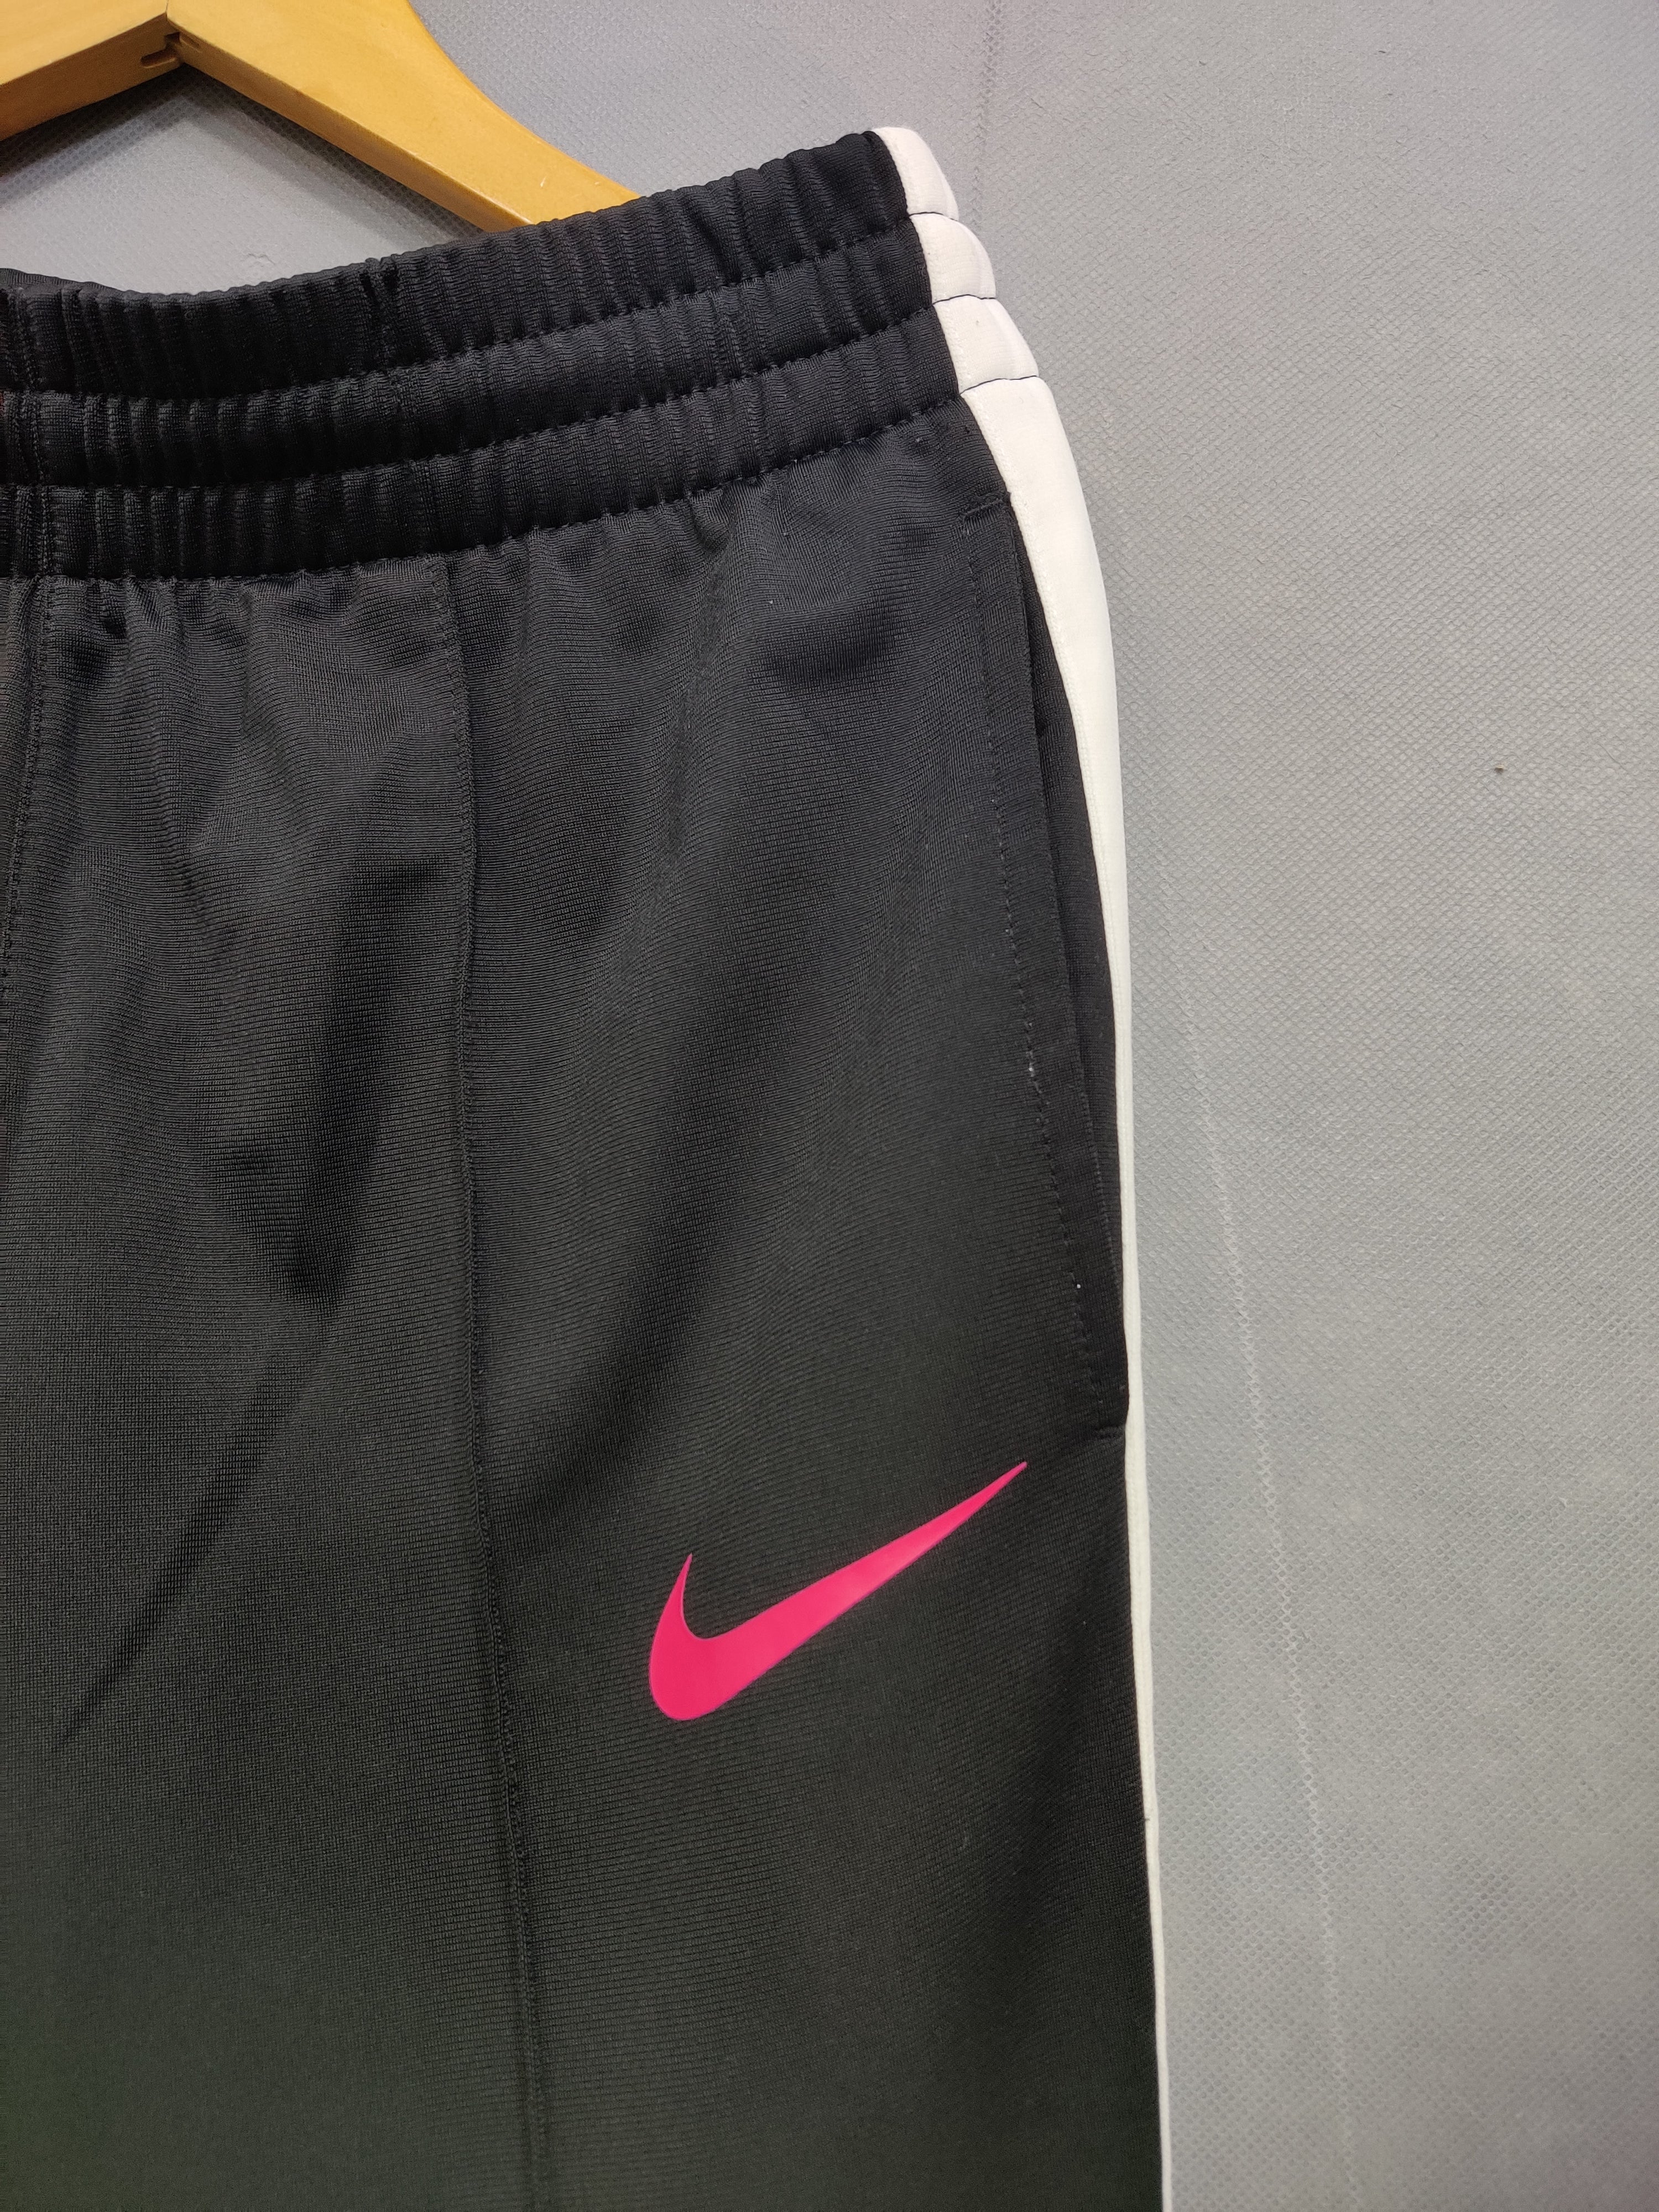 Nike Branded Original Sport Trouser For Women